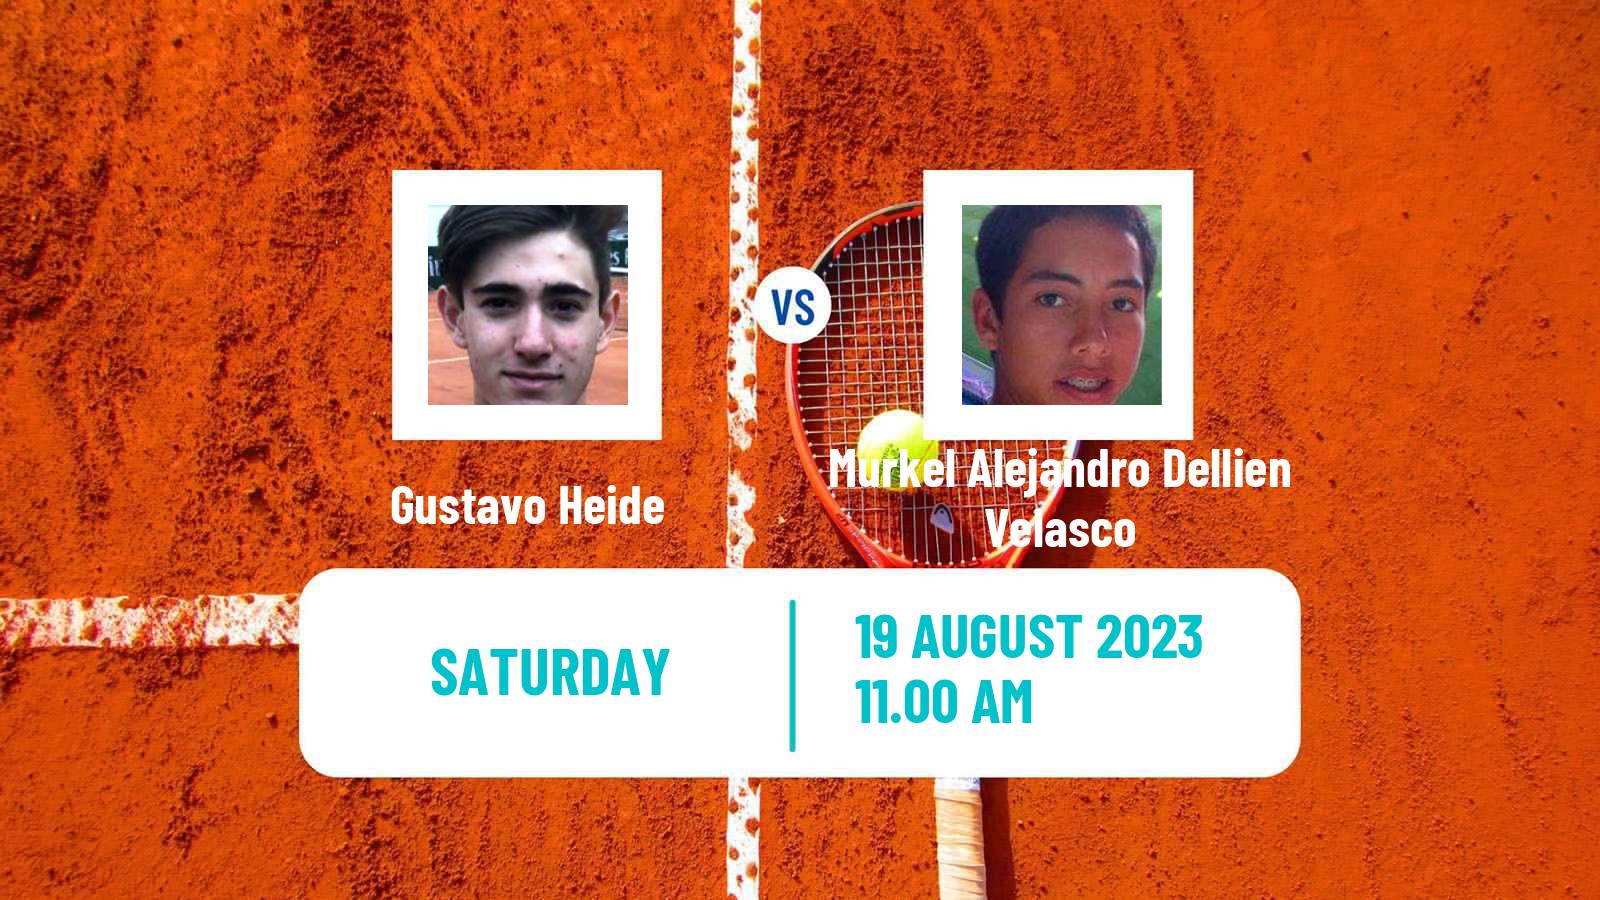 Tennis ITF M25 Trujillo Men Gustavo Heide - Murkel Alejandro Dellien Velasco